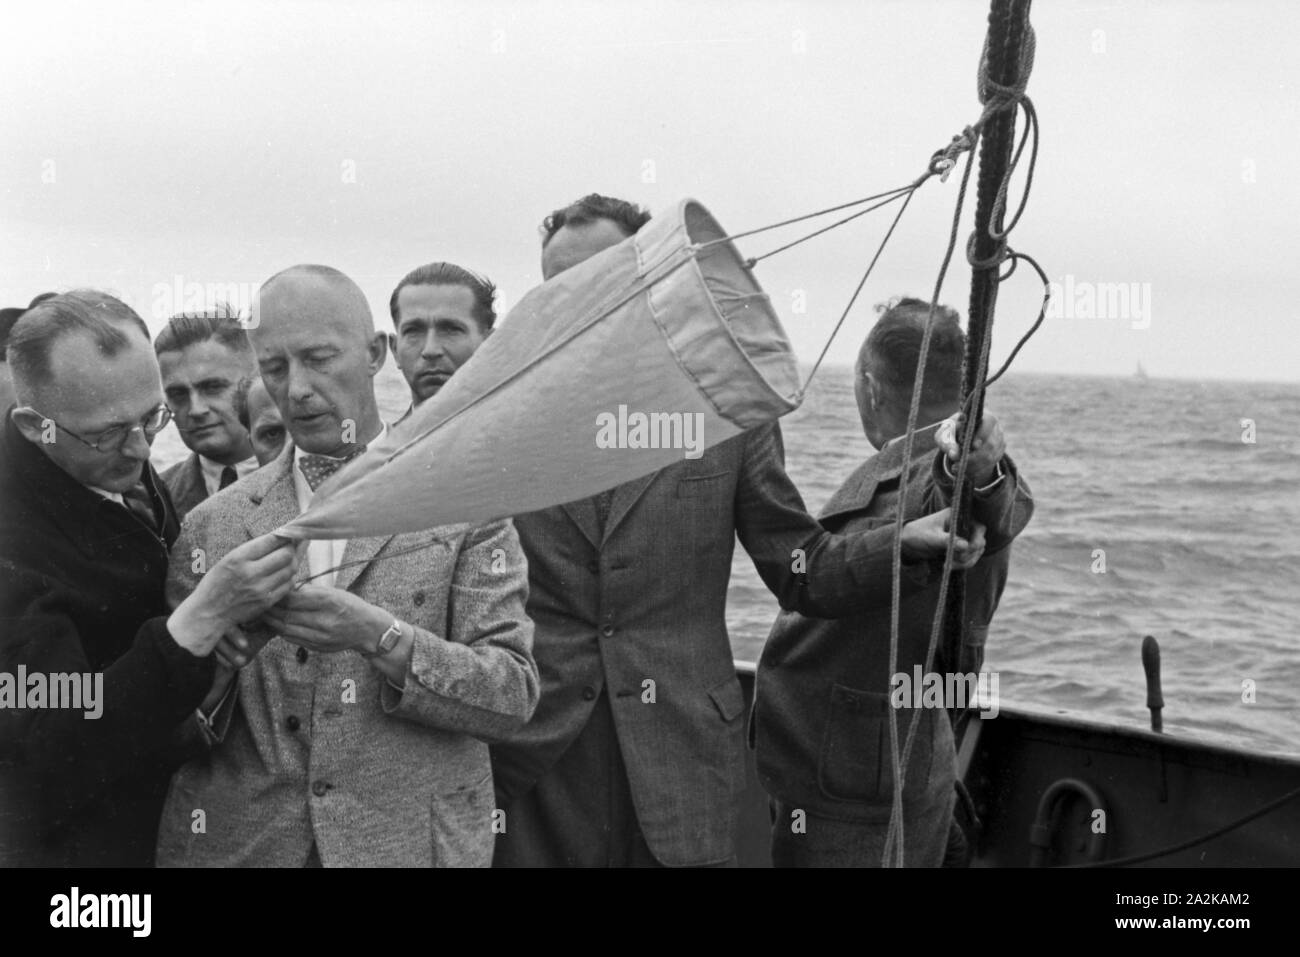 Makrelenfischerei der Insel Helgoland in der Nordsee, Deutschland 1940er Jahre. Makrelen angeln in der Nähe von Helgoland an der Nordsee, Deutschland 1940. Stockfoto